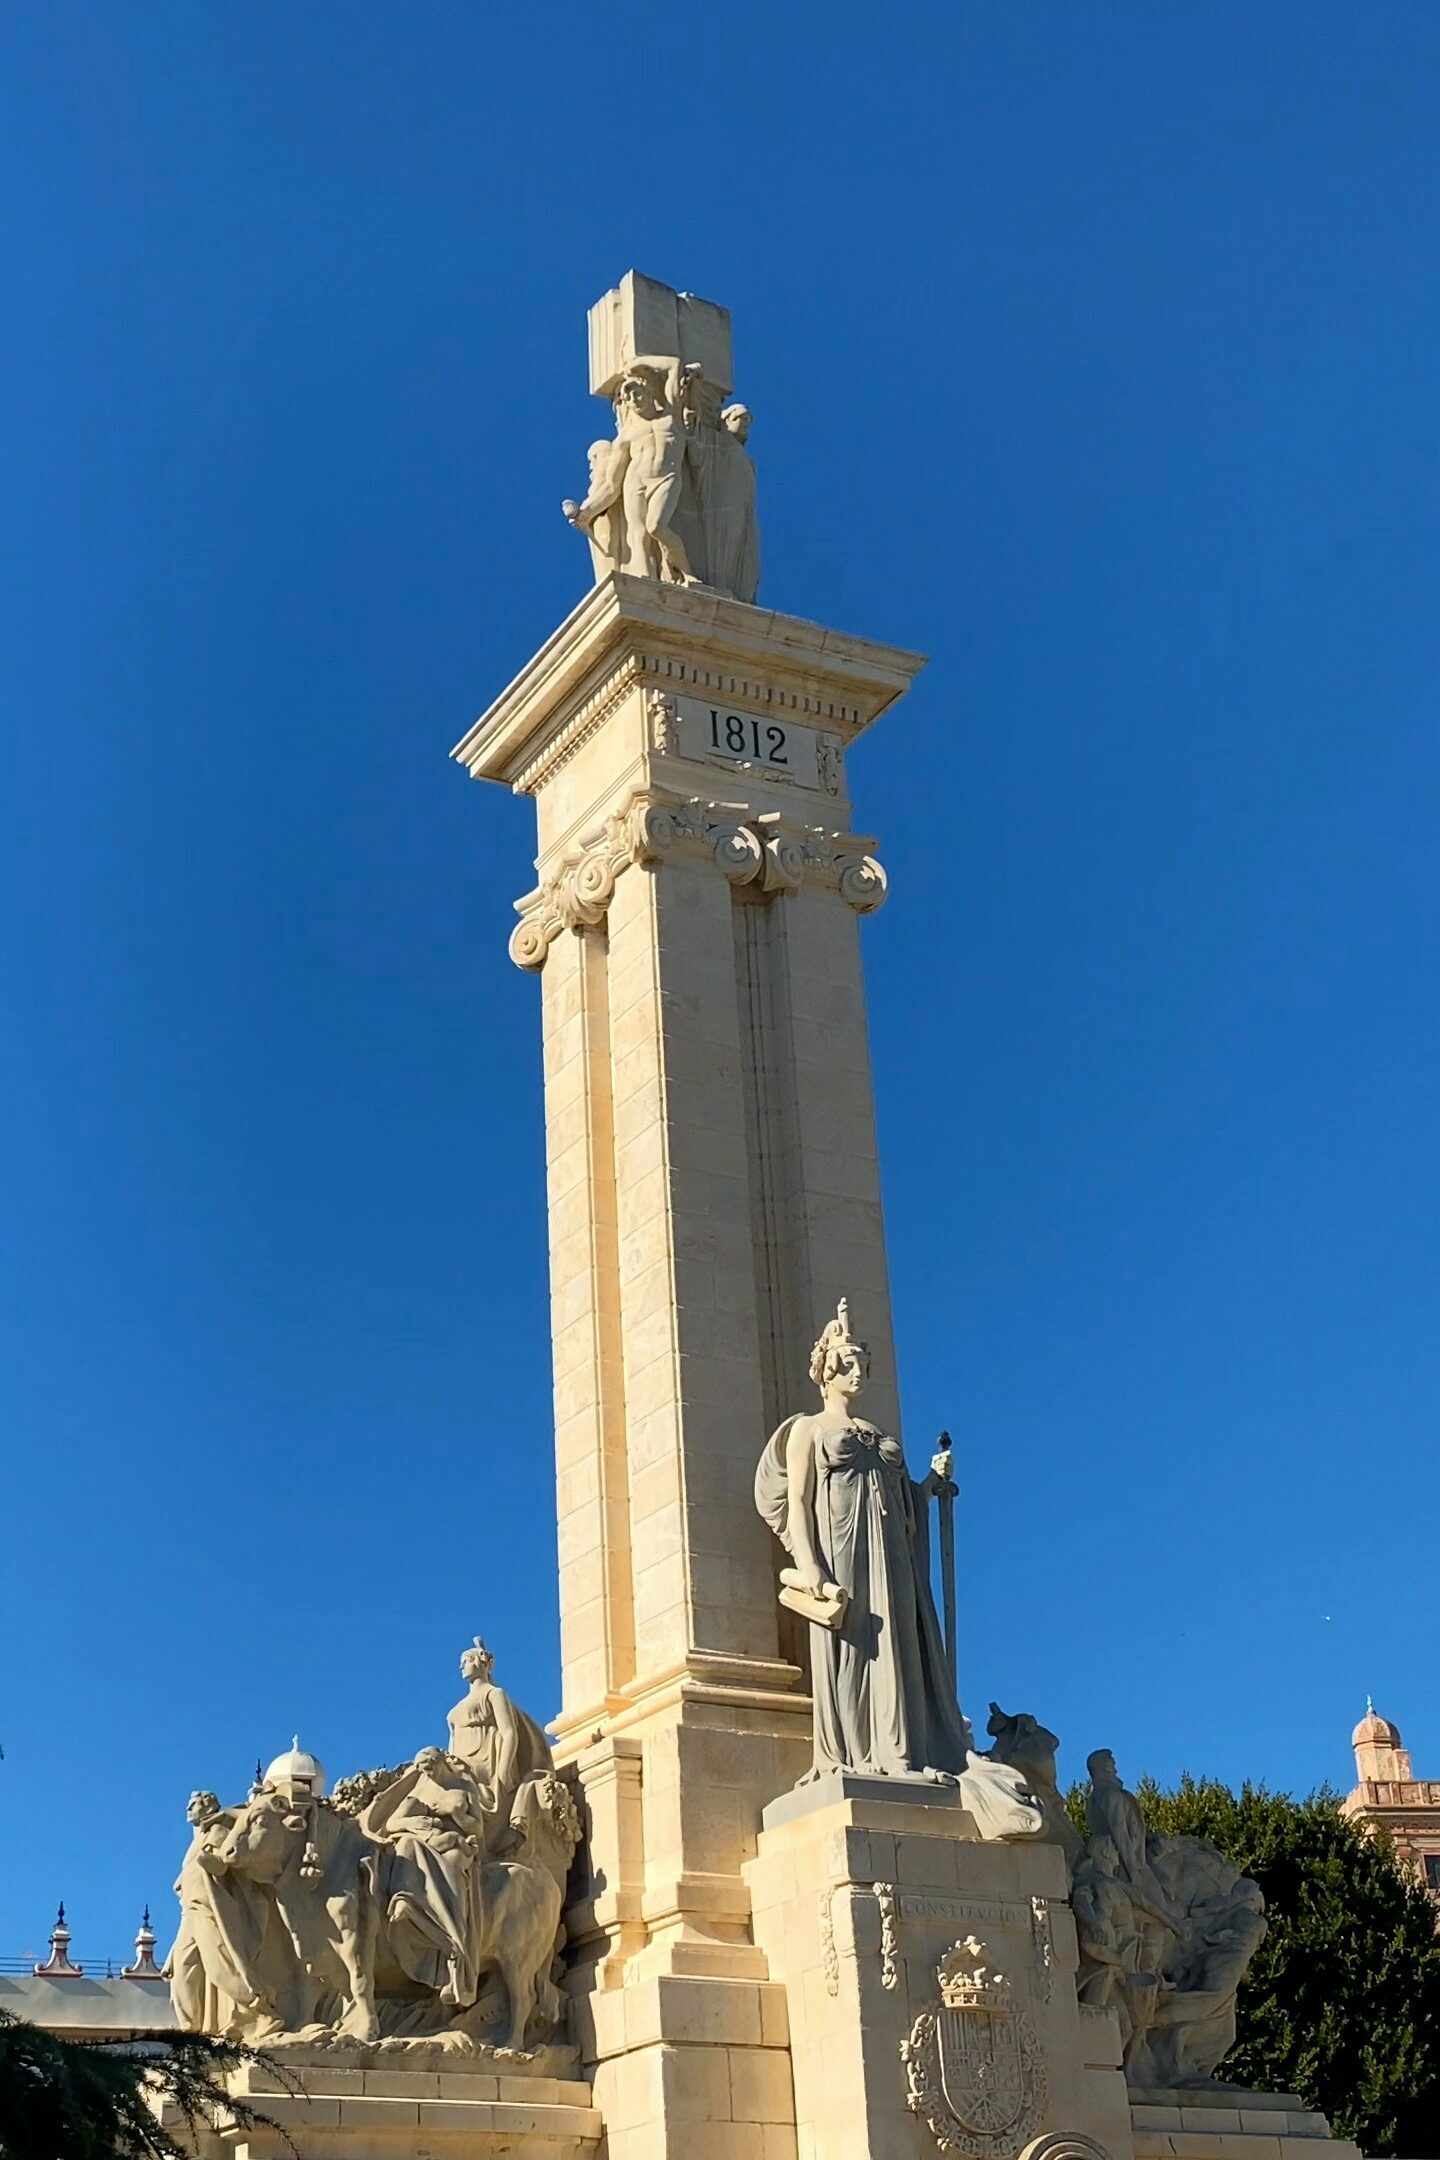 Monuments on the Plaza de España, Cáidz, Spain